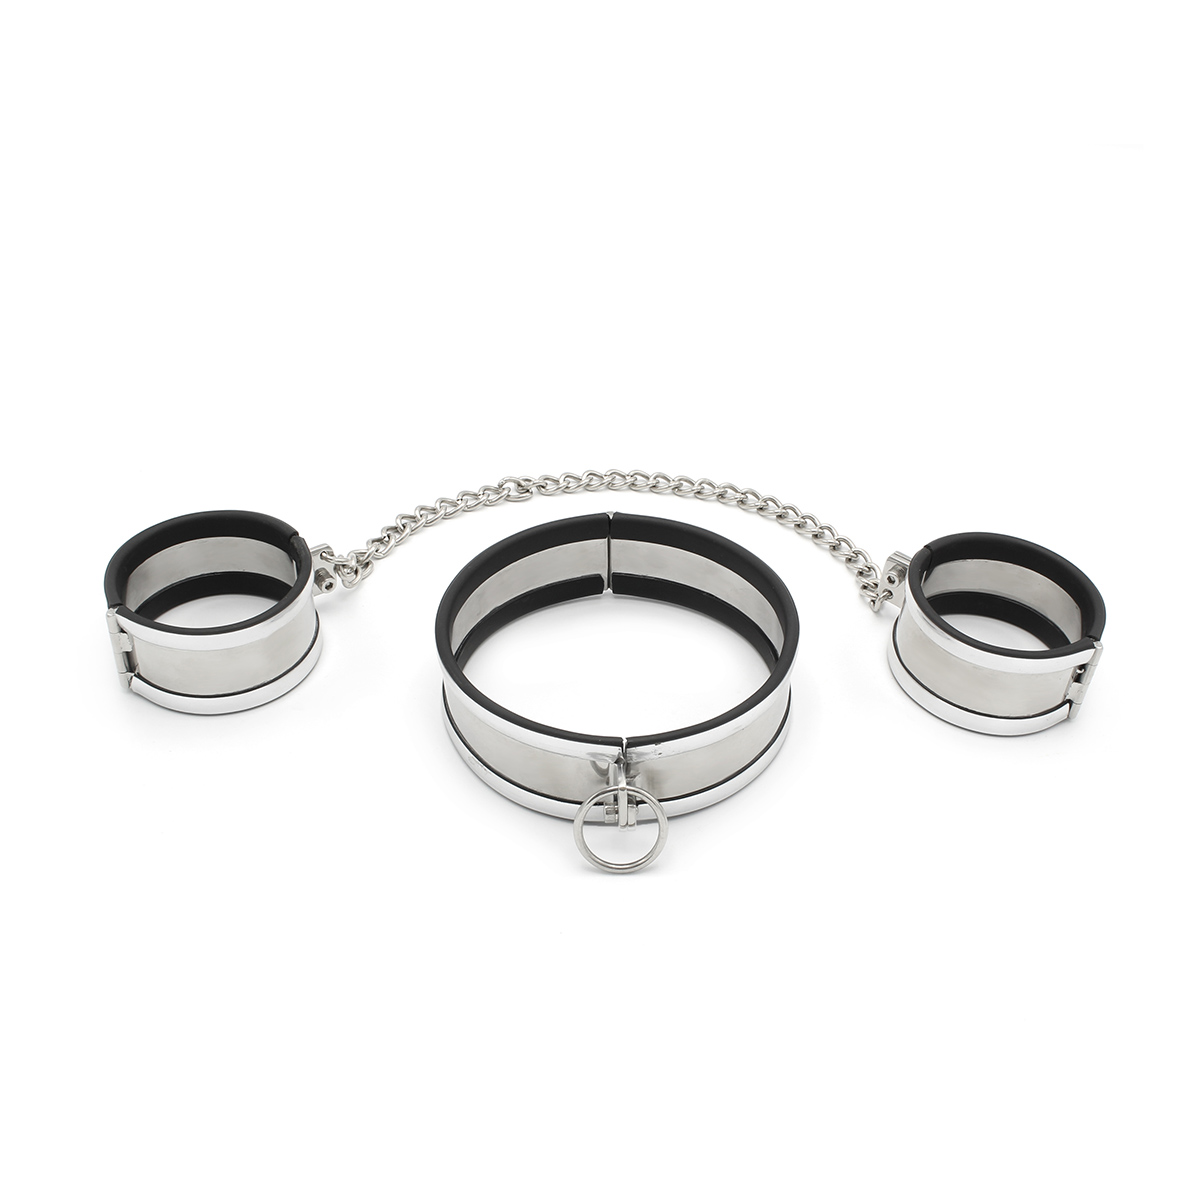 Steel-Medium-Collar-Cuffs-OPR-277100-1